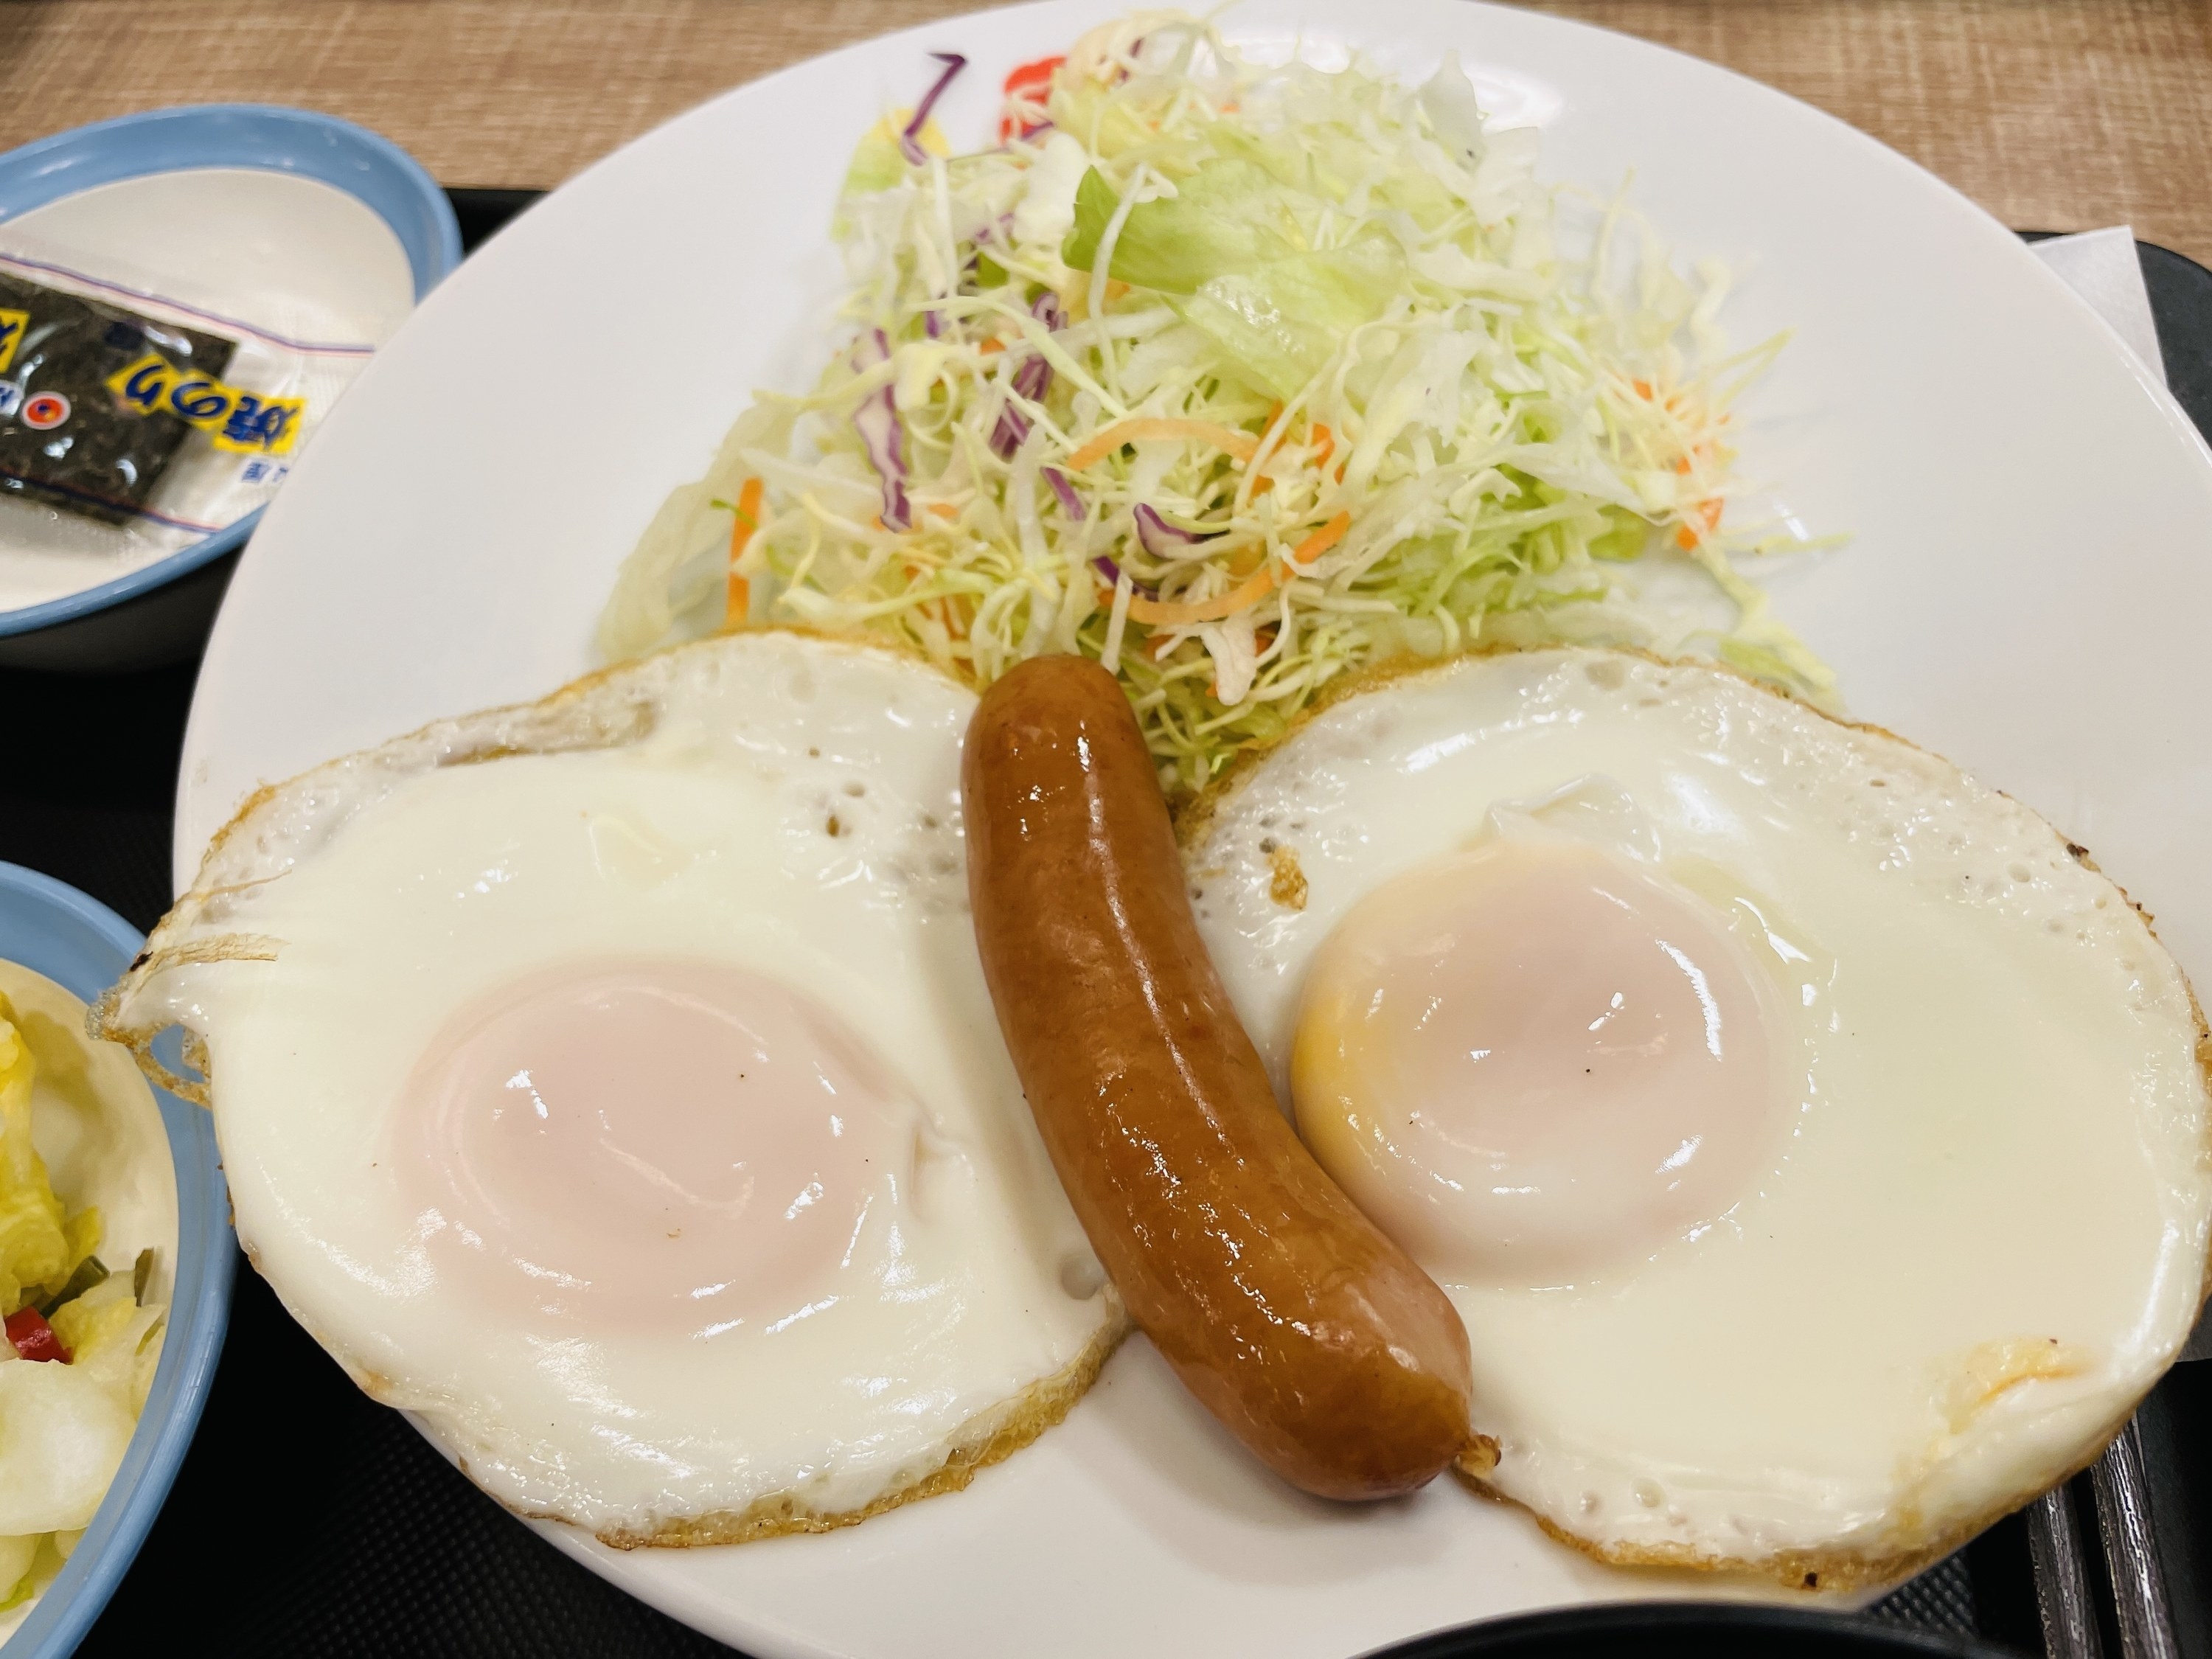 松屋のおいしいオススメメニュー「ソーセージエッグW定食」盛りだくさんで満腹になれる人気のモーニング